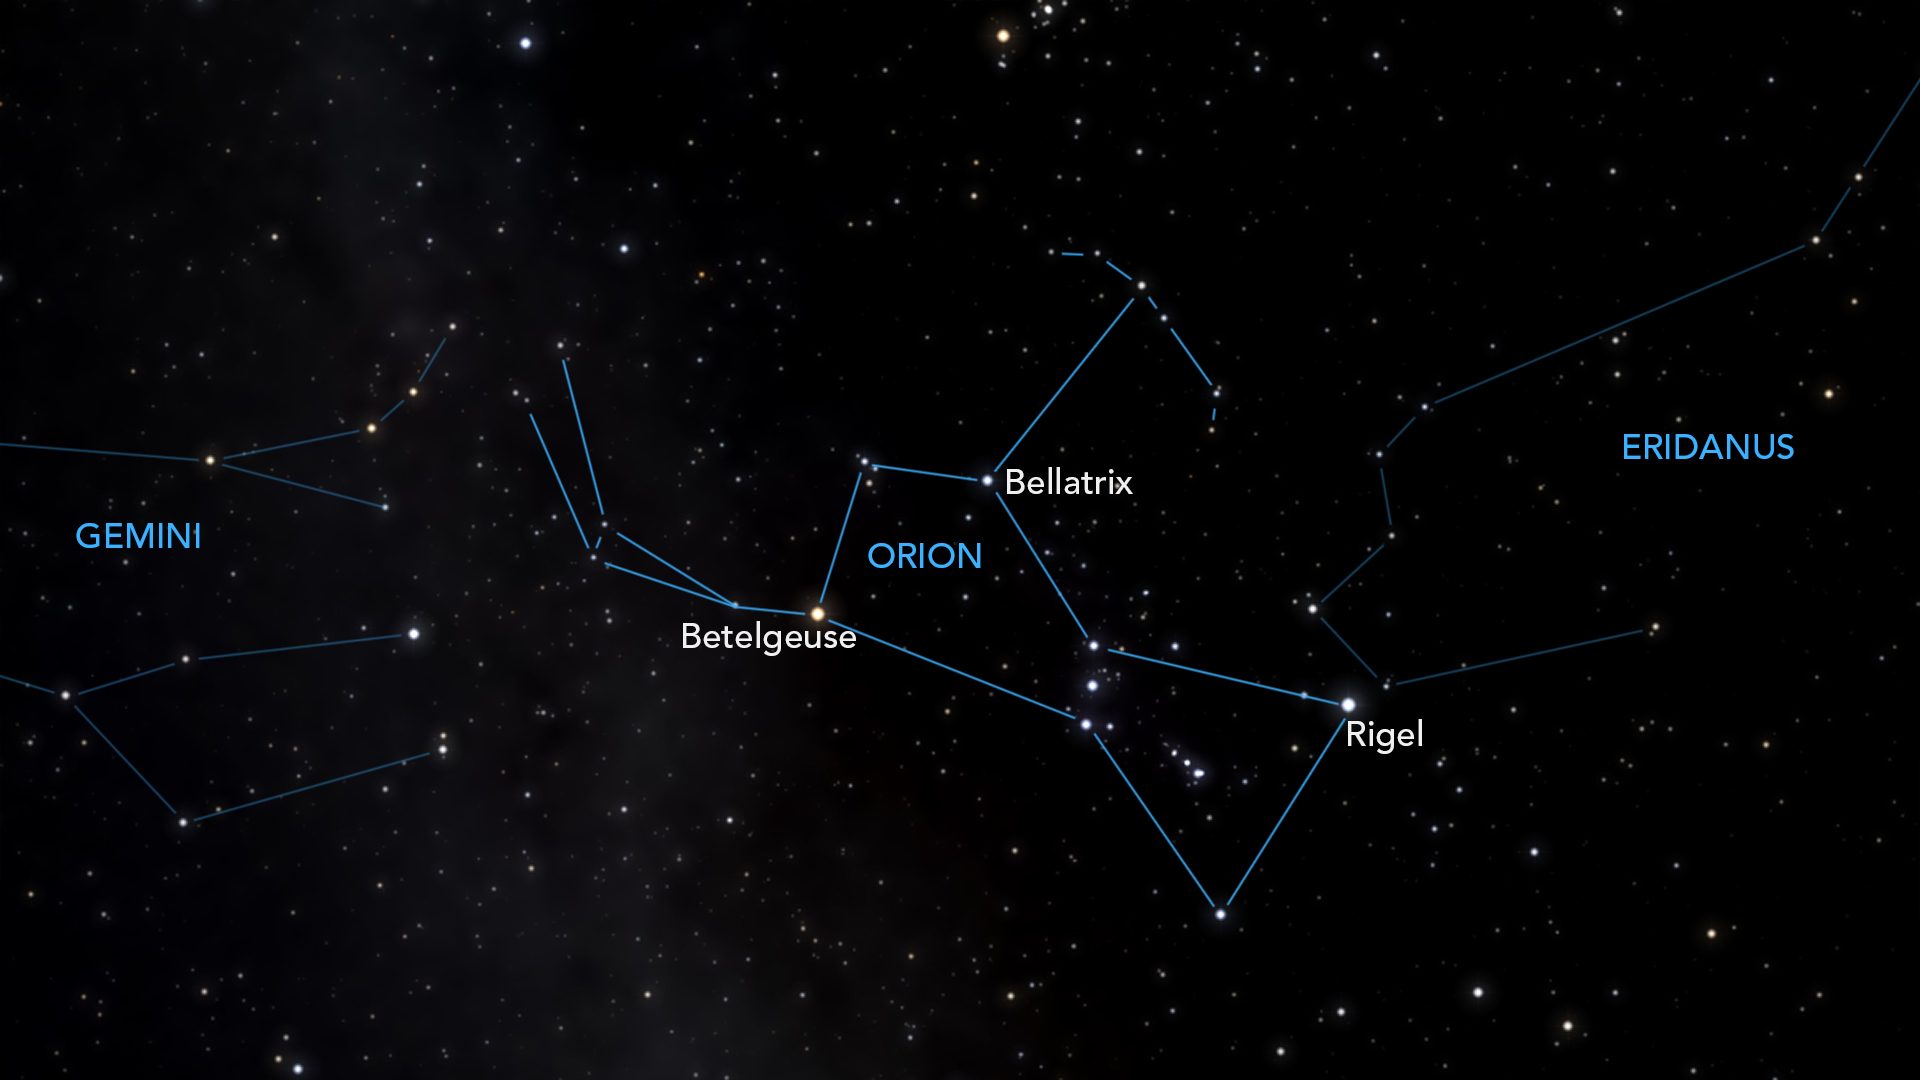 Созвездие орион на звездном небе. Бетельгейзе в созвездии Ориона. Звезда Бетельгейзе в созвездии Ориона. Созвездие Ортон звезда ригель. Ригель в созвездии Ориона.